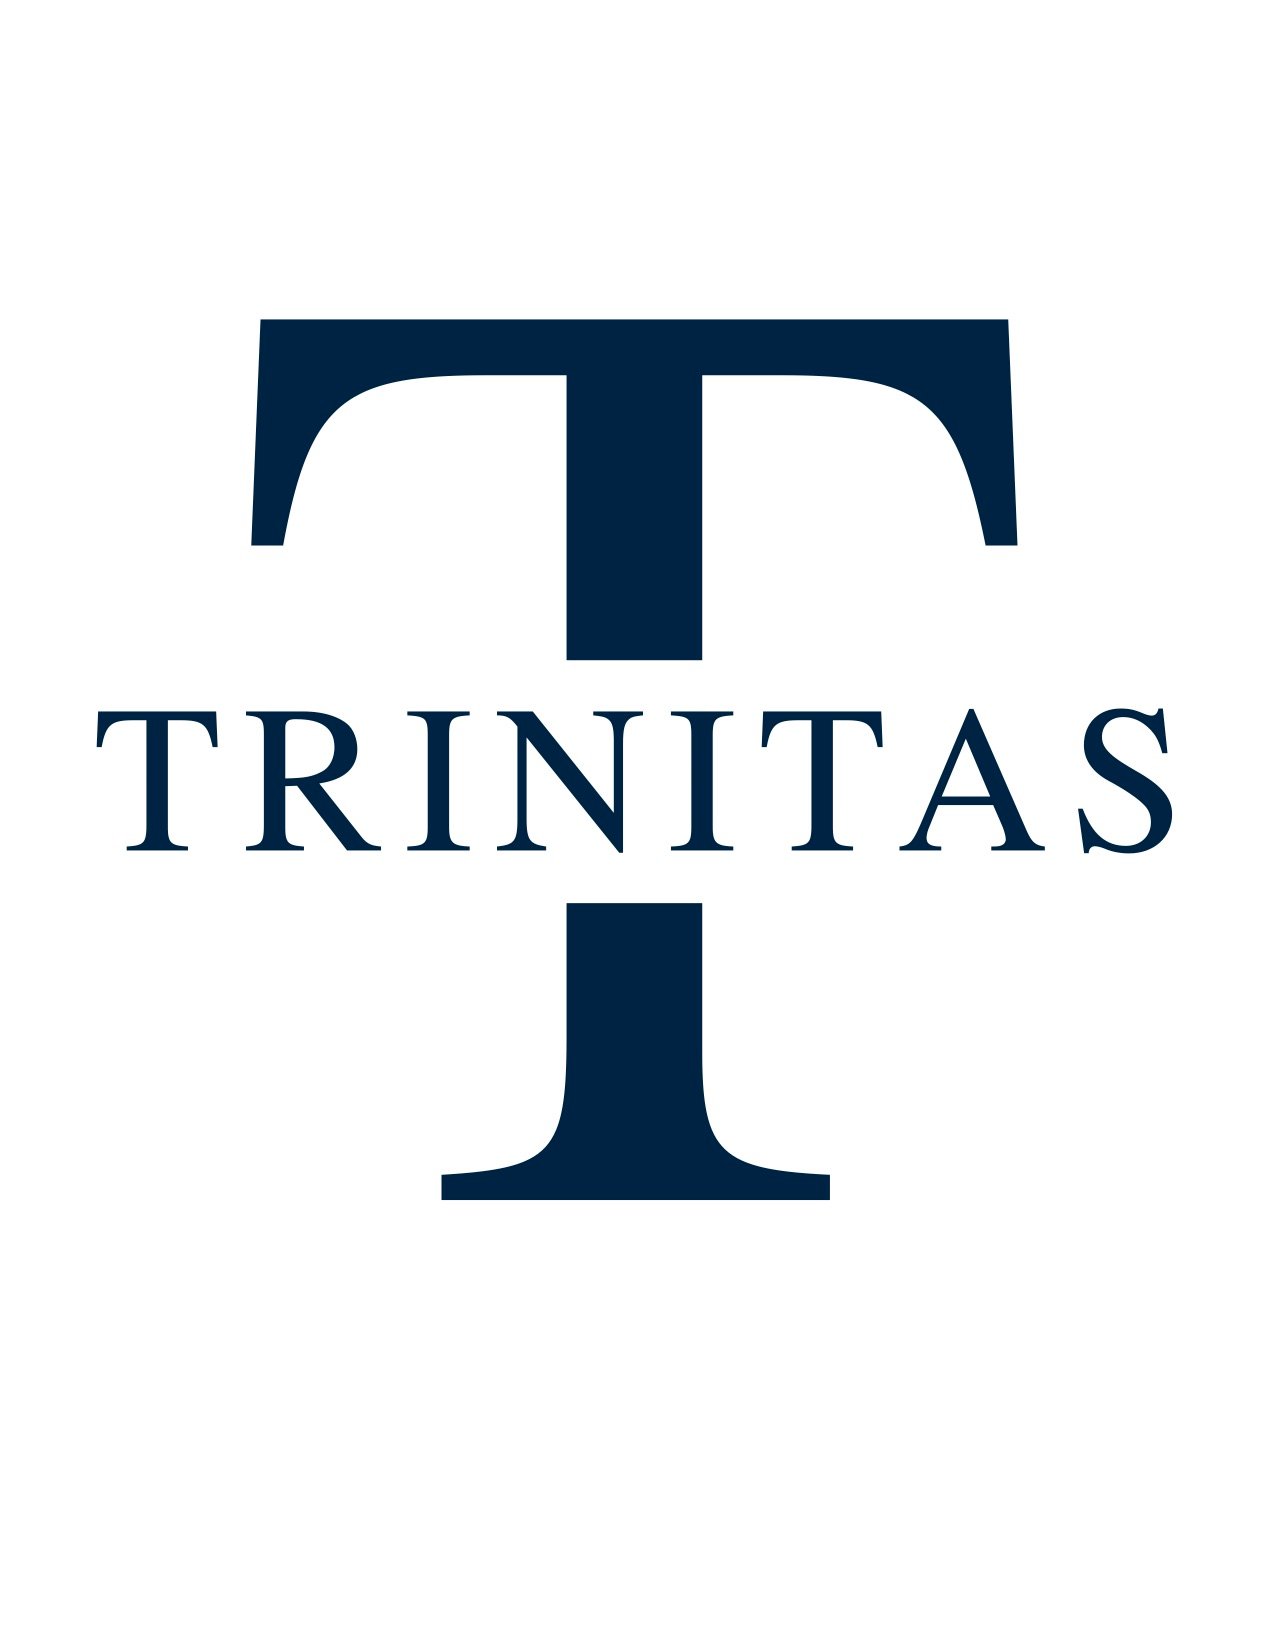 Trinitas